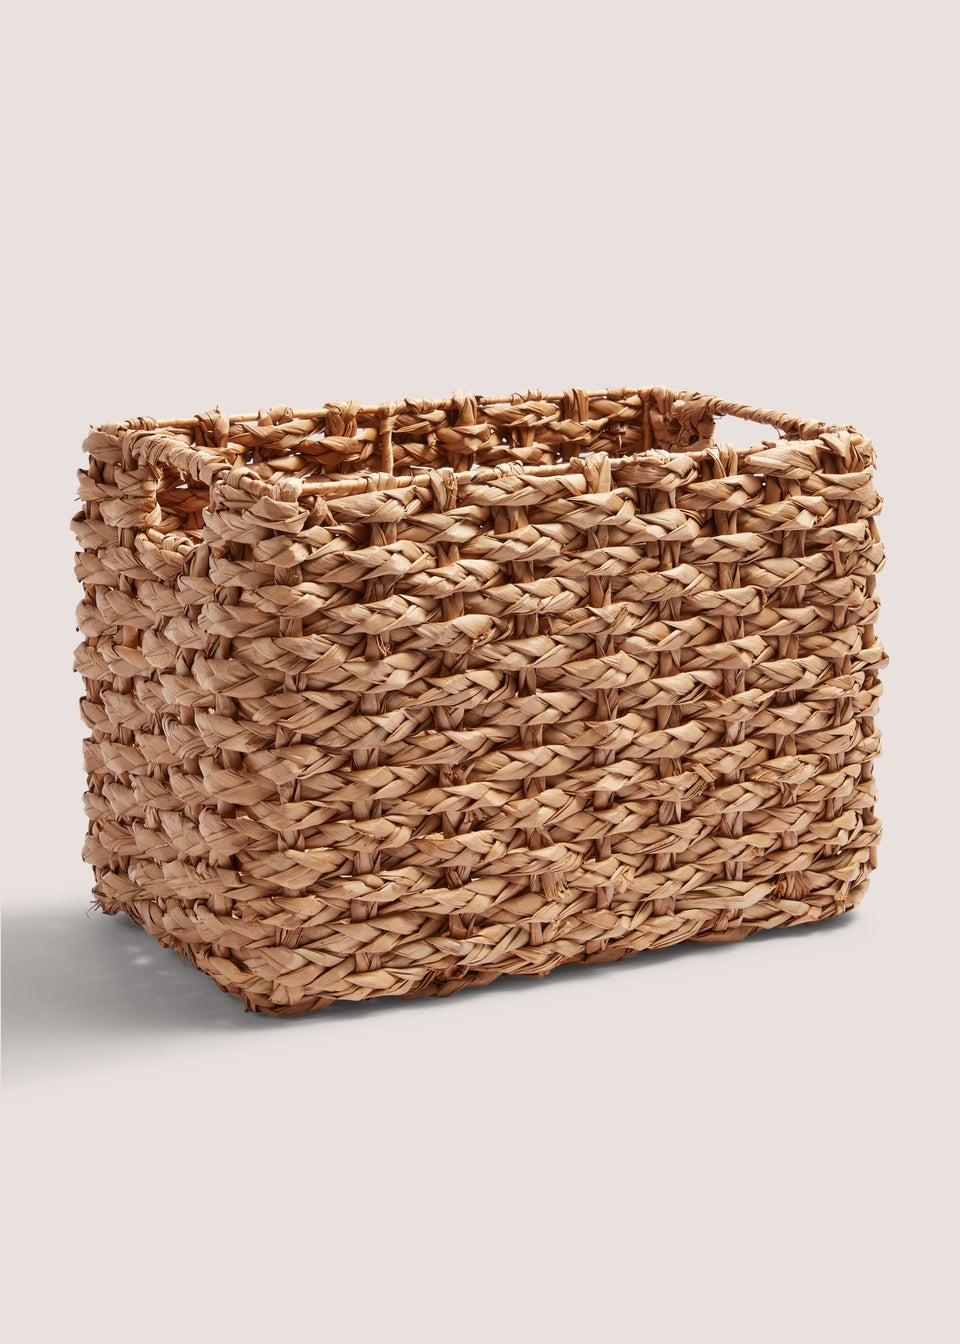 Woven Cottage Rectangle Basket (43cm x 30cm x 27cm)